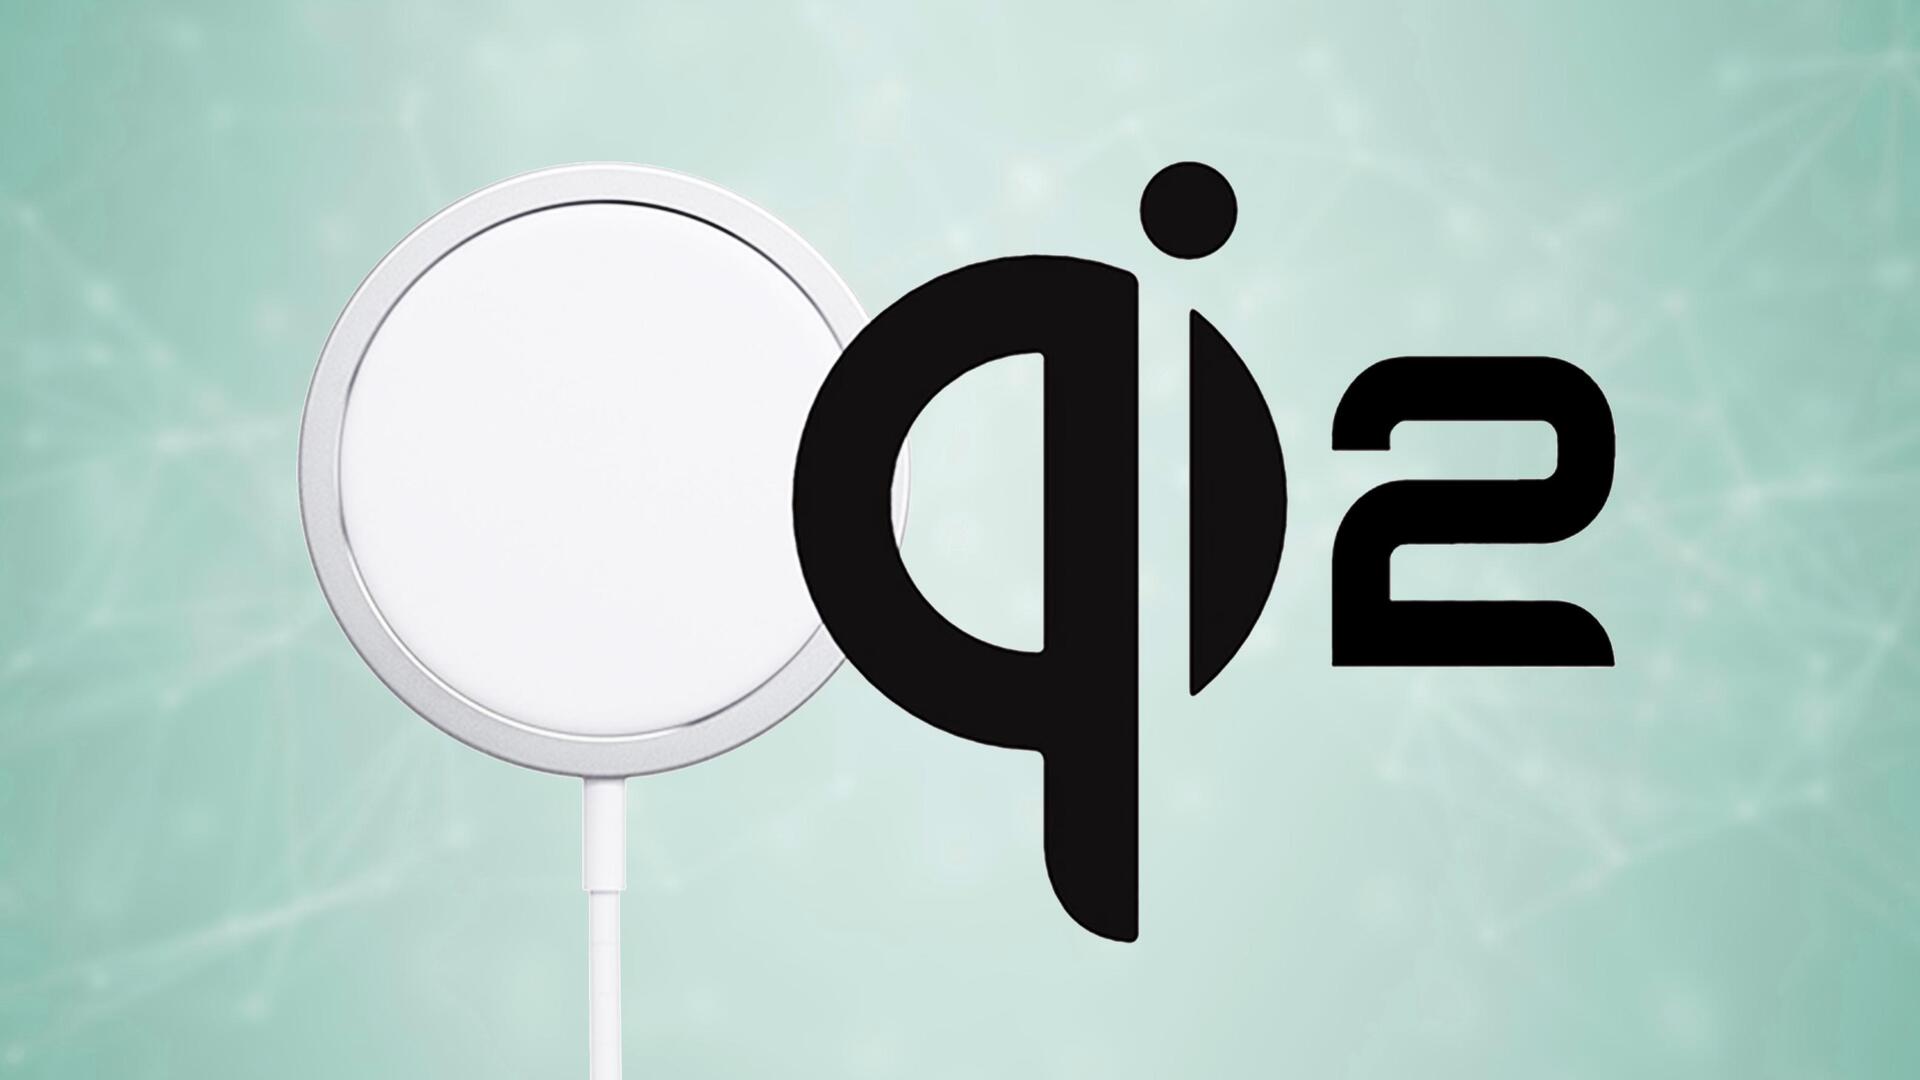 वायरलेस चार्जिंग में सुधार लाएगा Qi2, कैसे करेगा काम?